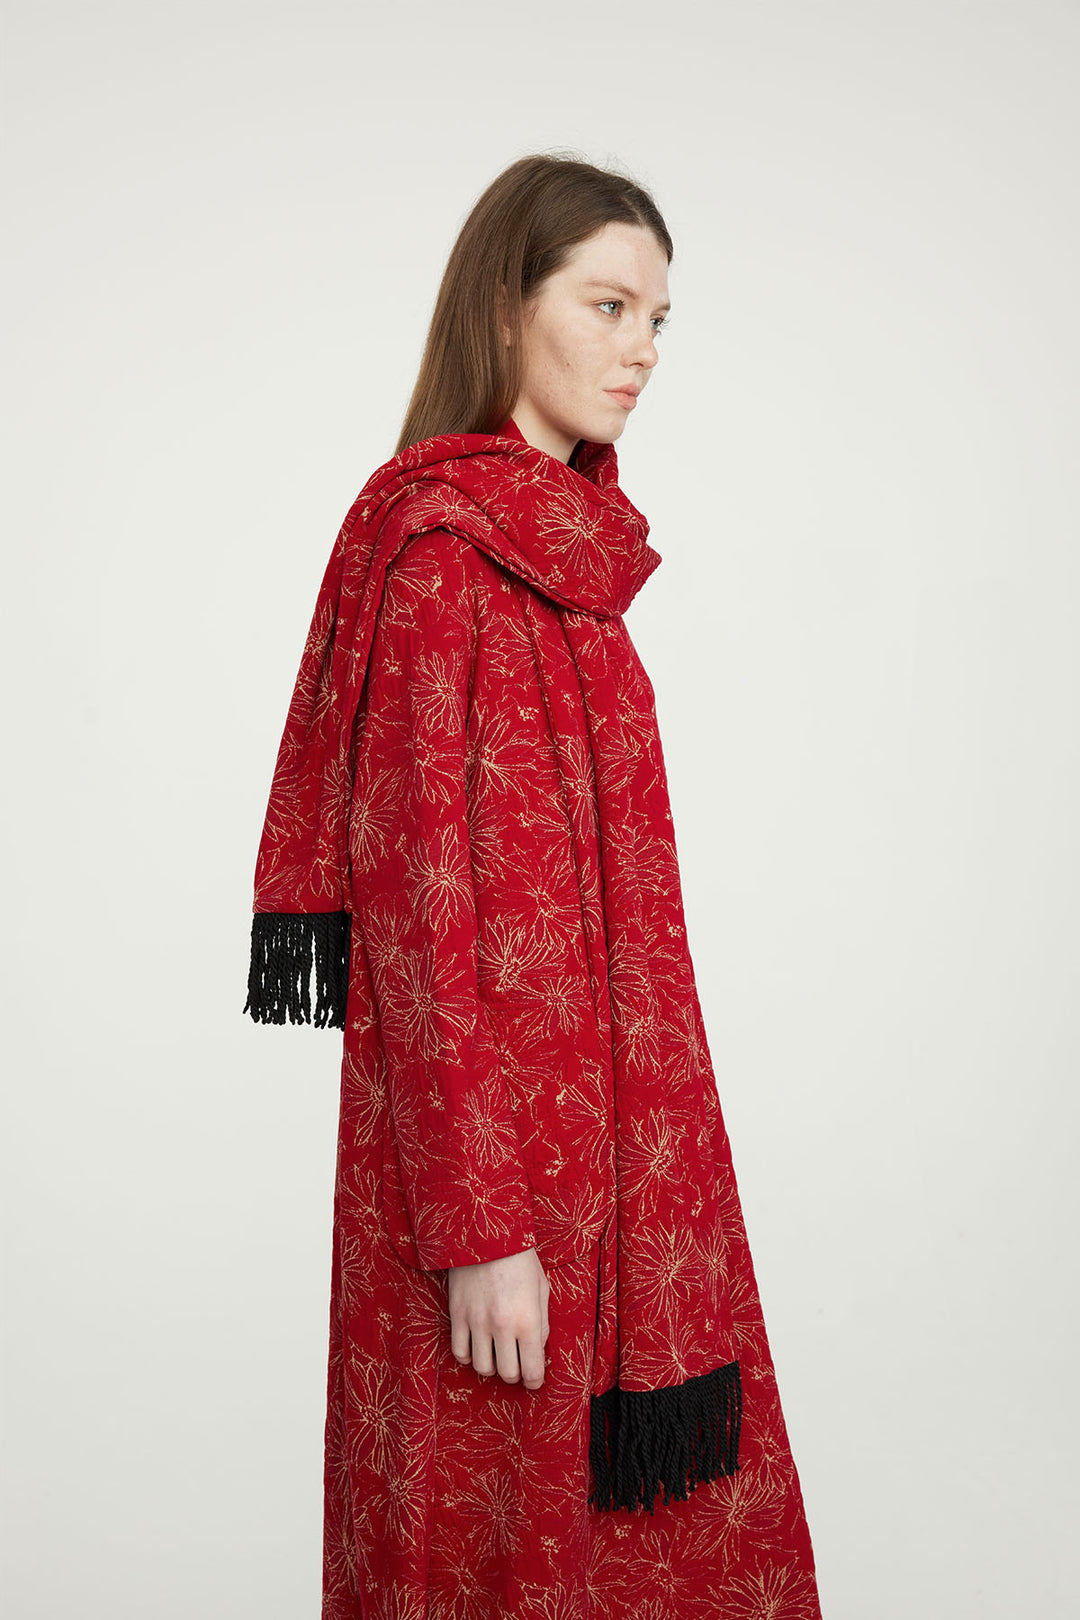 Vestido casual bordado vermelho com lenço